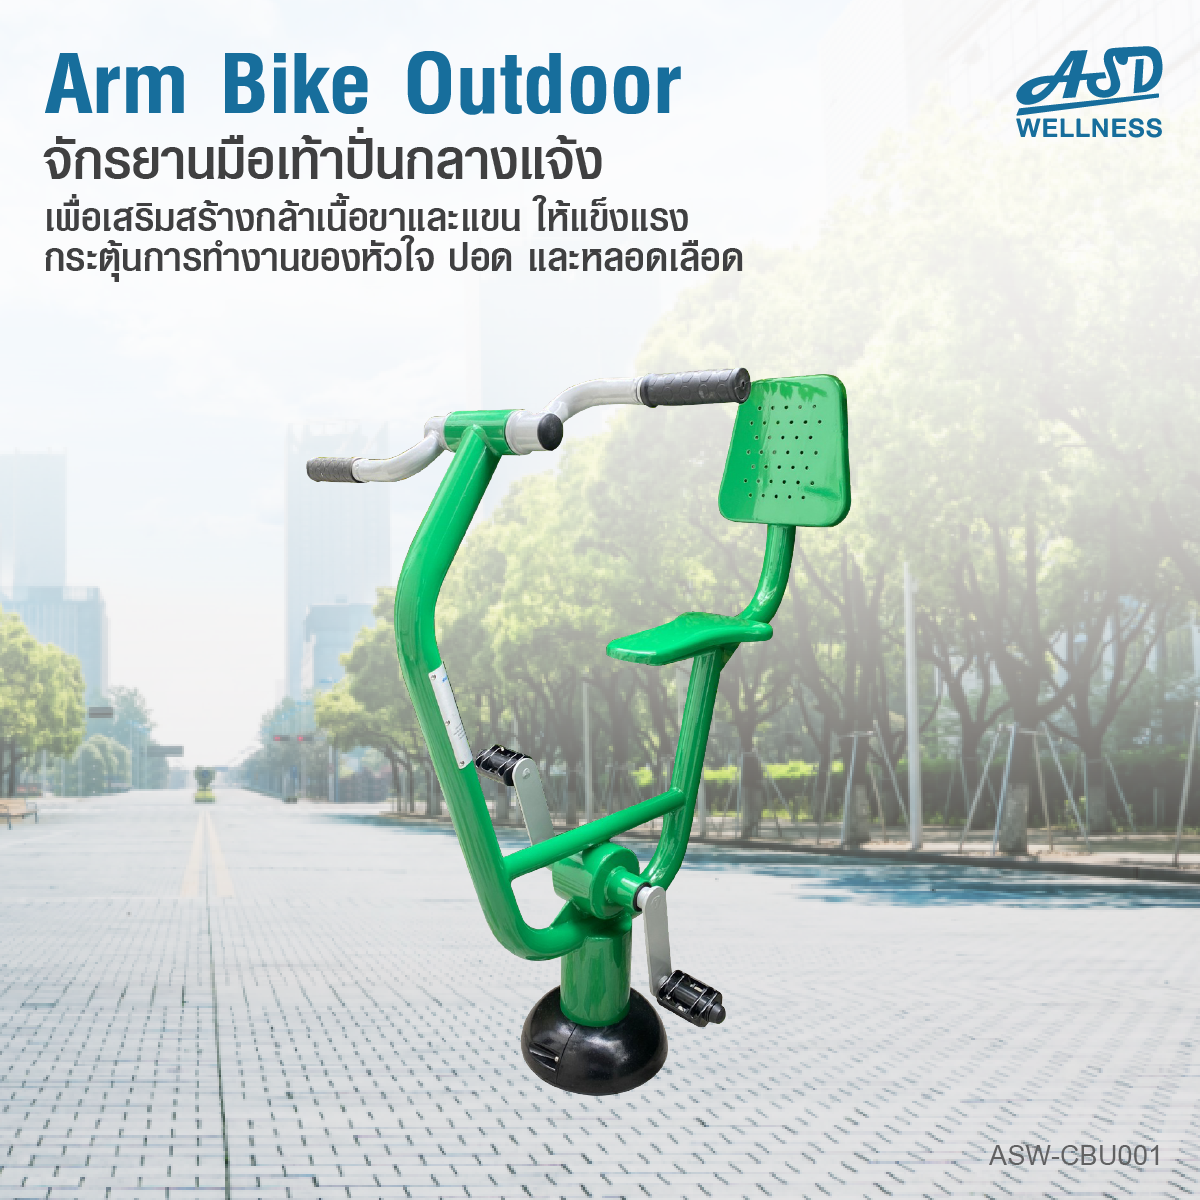 จักรยานมือเท้าปั่นออกกำลังกาย แบบ Cardio กลางแจ้ง Arm Bike Outdoor